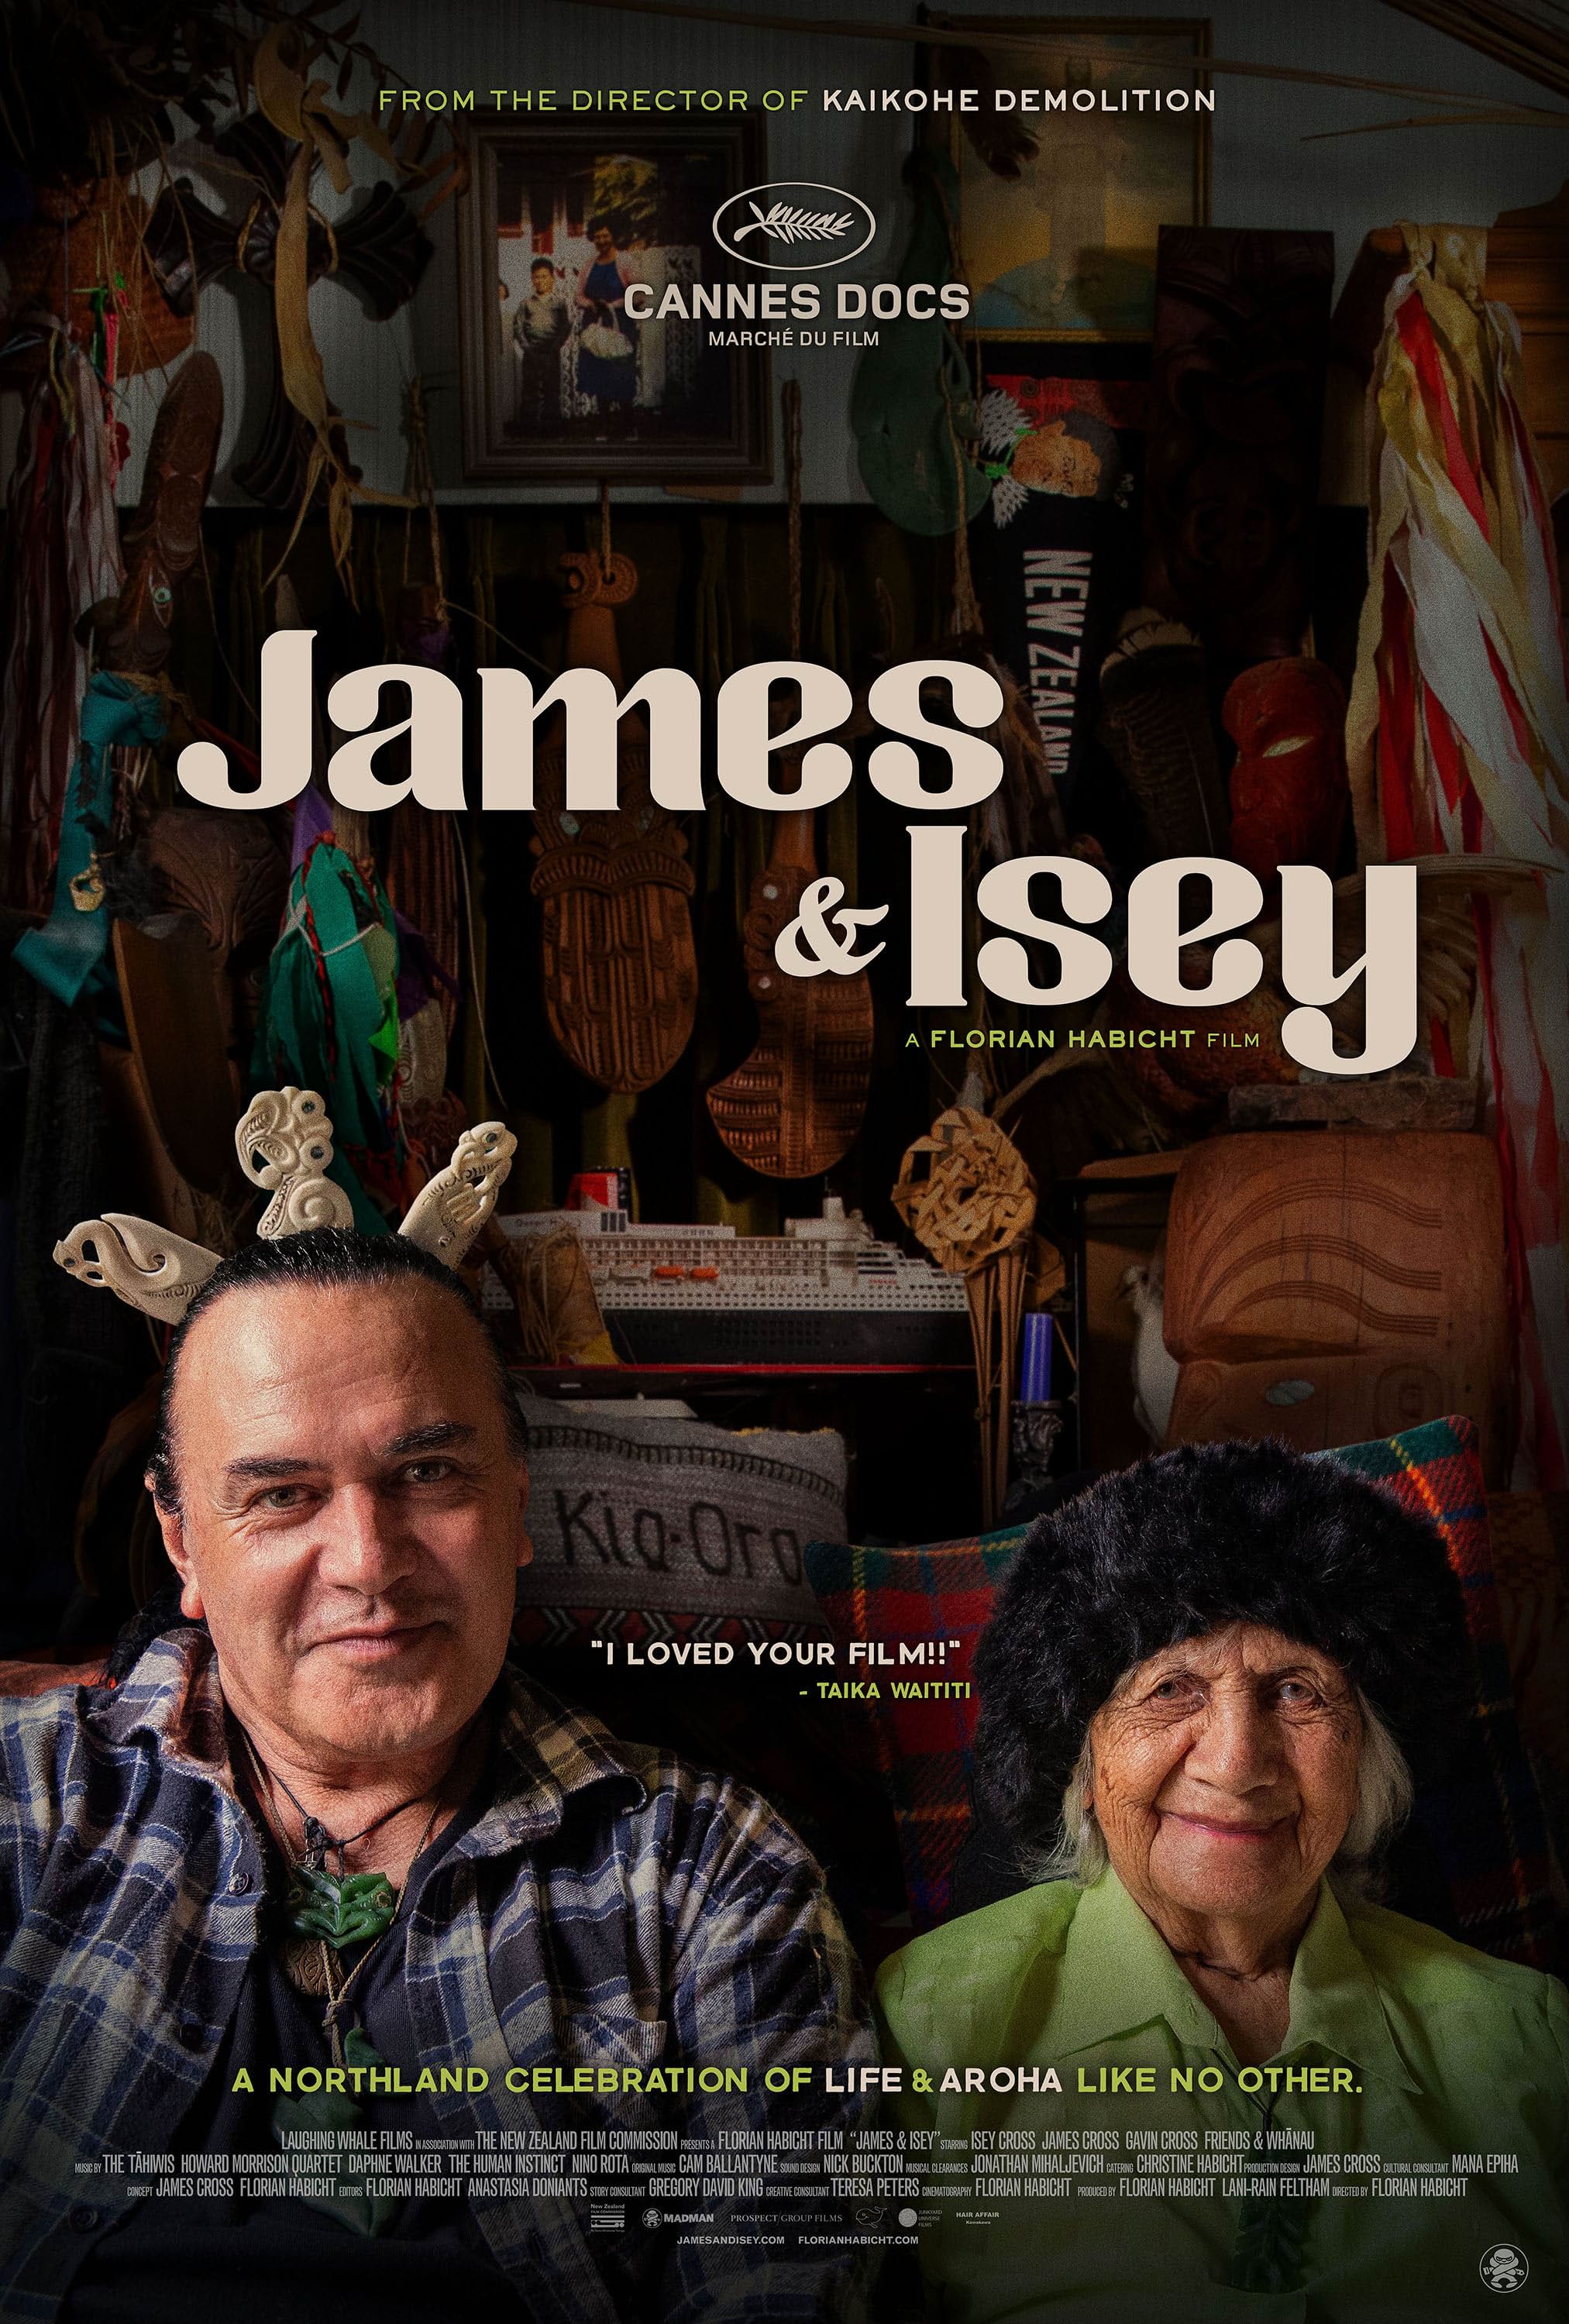     James & Isey